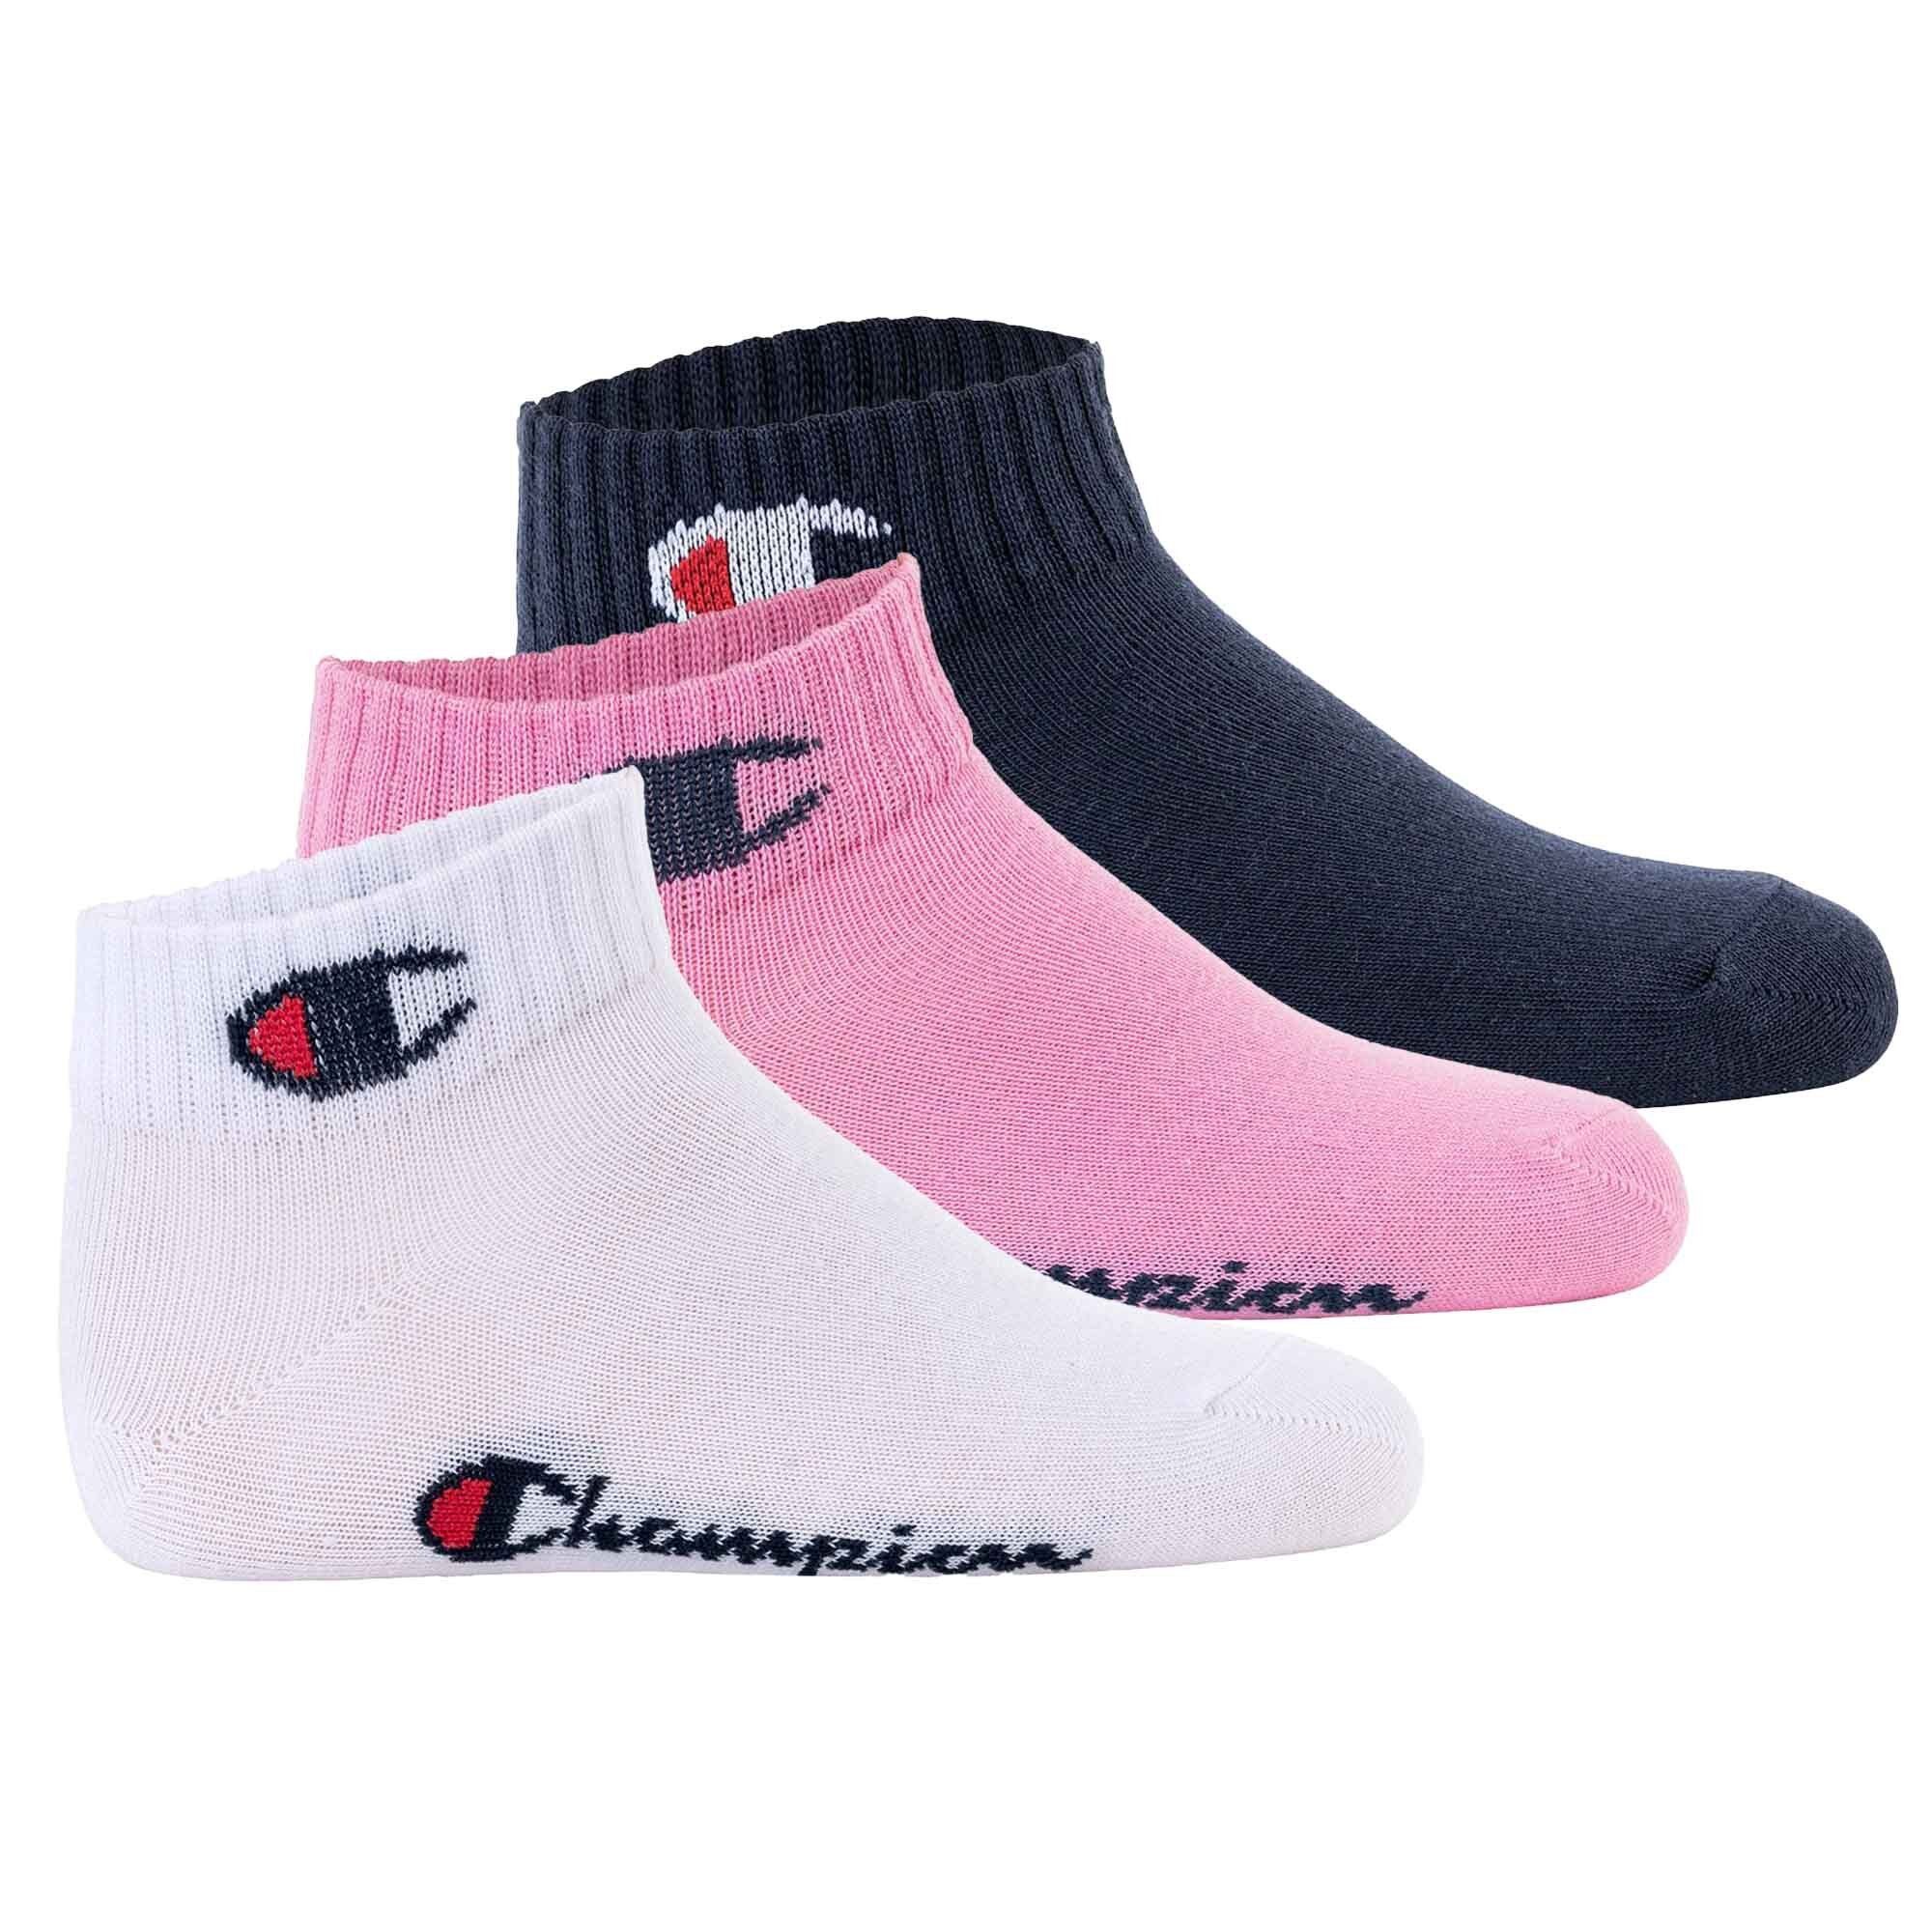 mit Rabatt kaufen Champion Freizeitsocken Kinder Socken, 3er Logo, Pink/Weiß/Blau - Pack Quarter, einfarbig